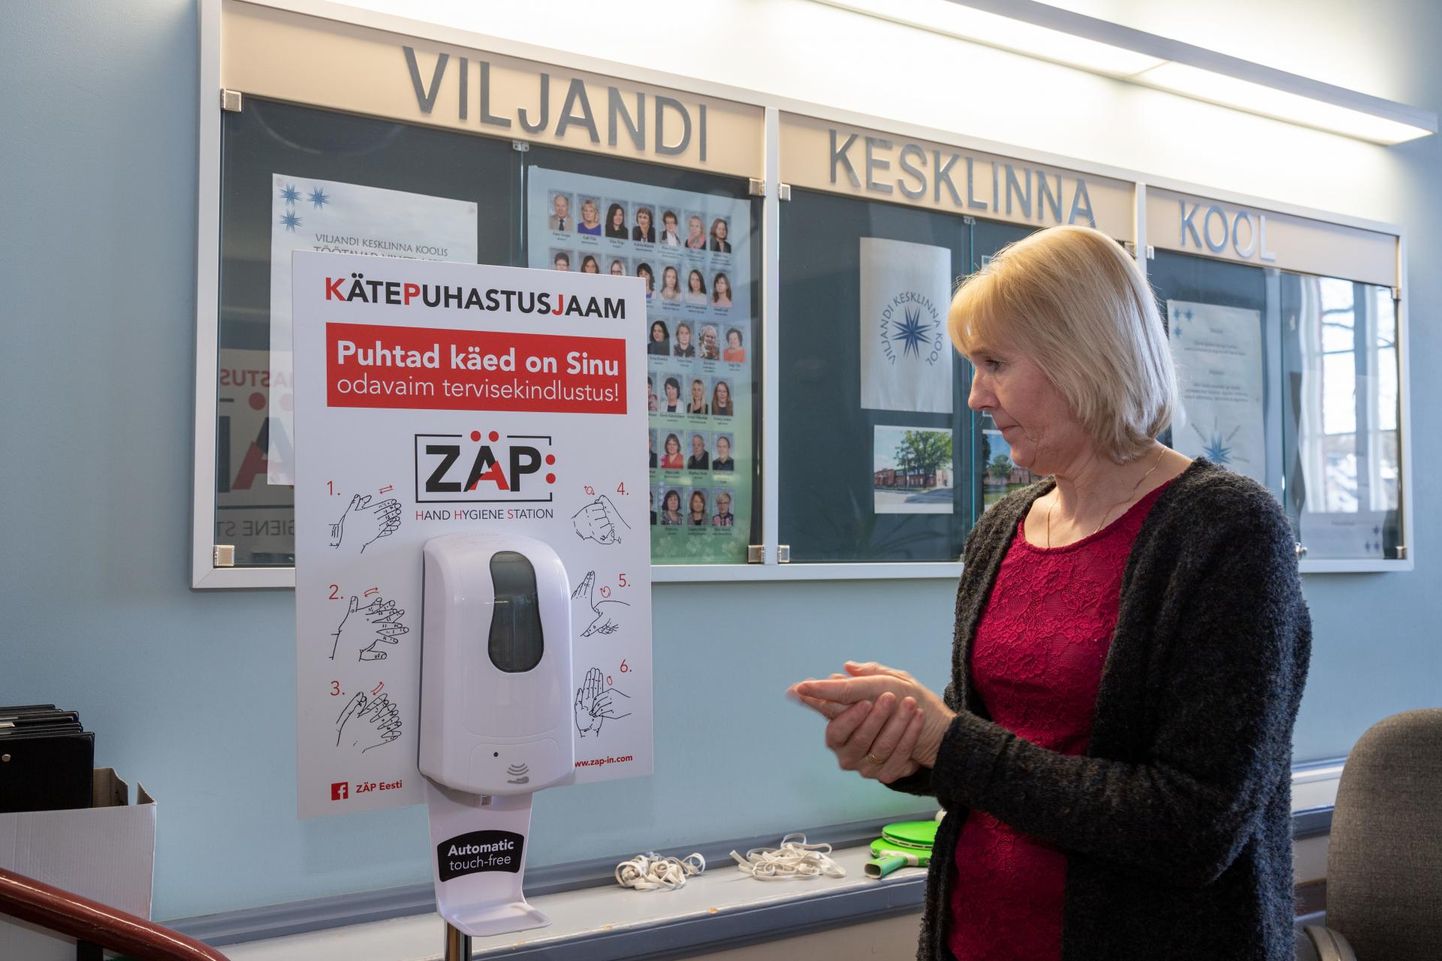 Viljandi Kesklinna kooli paigaldati gripihooaja alguses kolm desinfitseerimisautomaati. Pildil on kooli administraator Helle Pajuva.